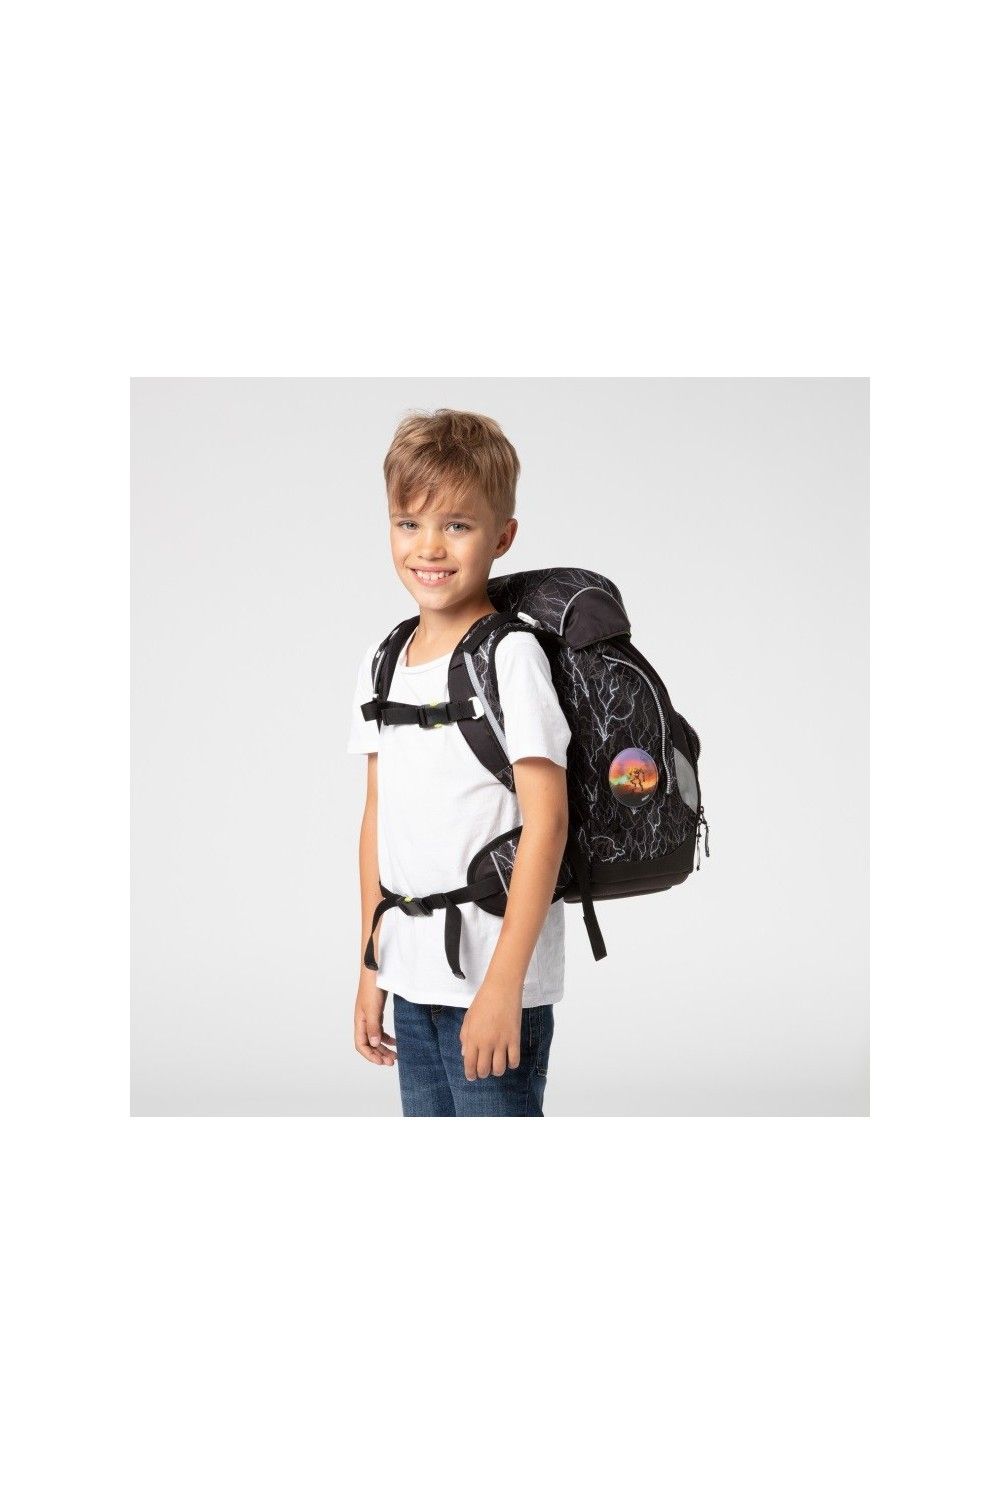 ergobag pack school backpack set 6 pieces Special Edition Super ReflektBaer